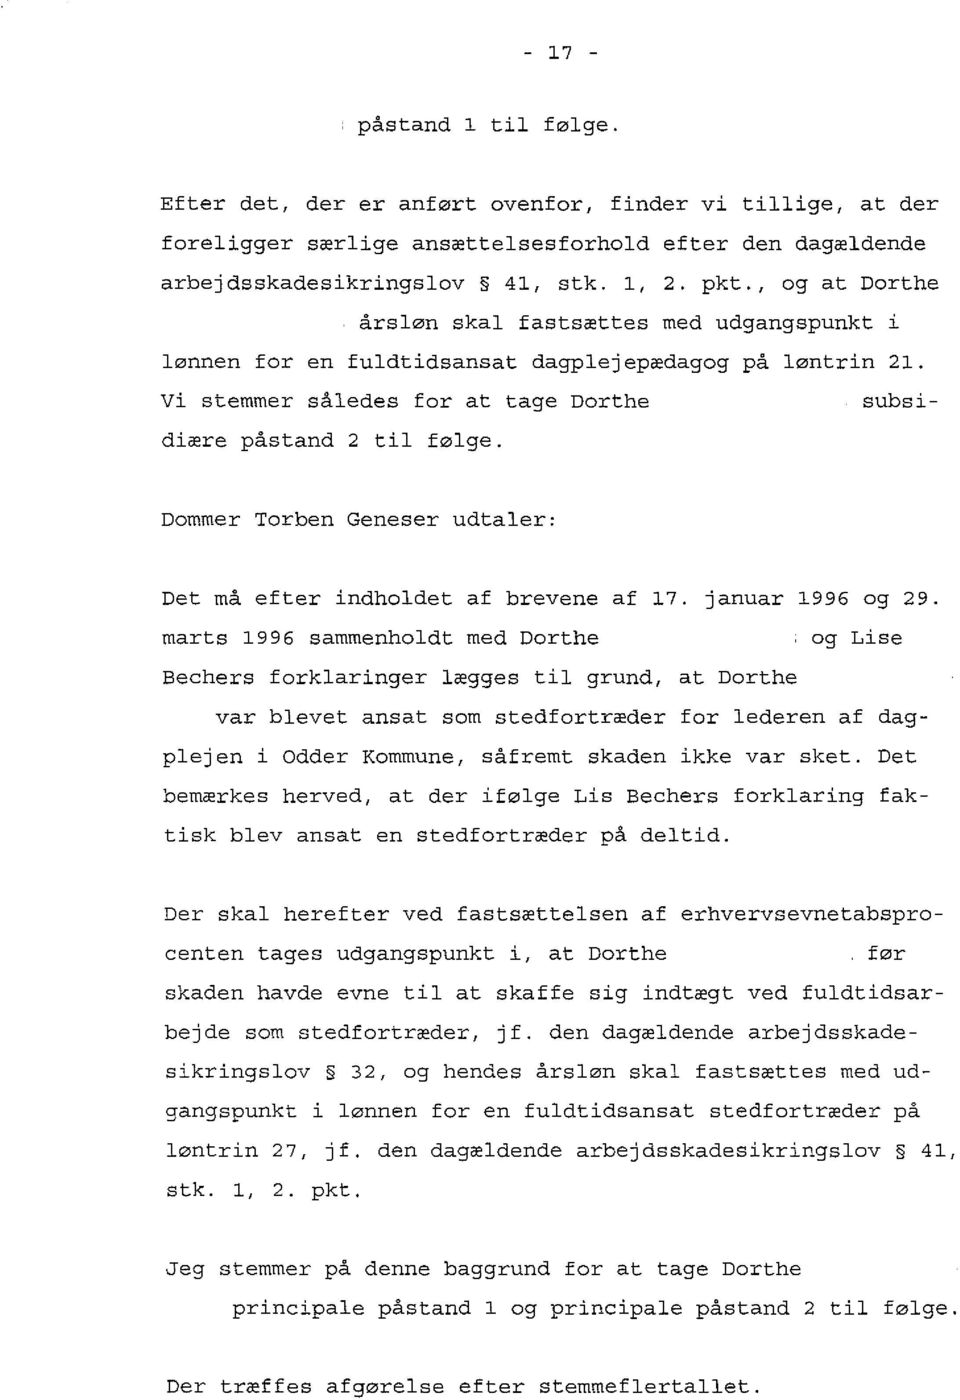 Dommer Torben Geneser udtaler: Det må efter indholdet af brevene af 17. januar 1996 og 29.